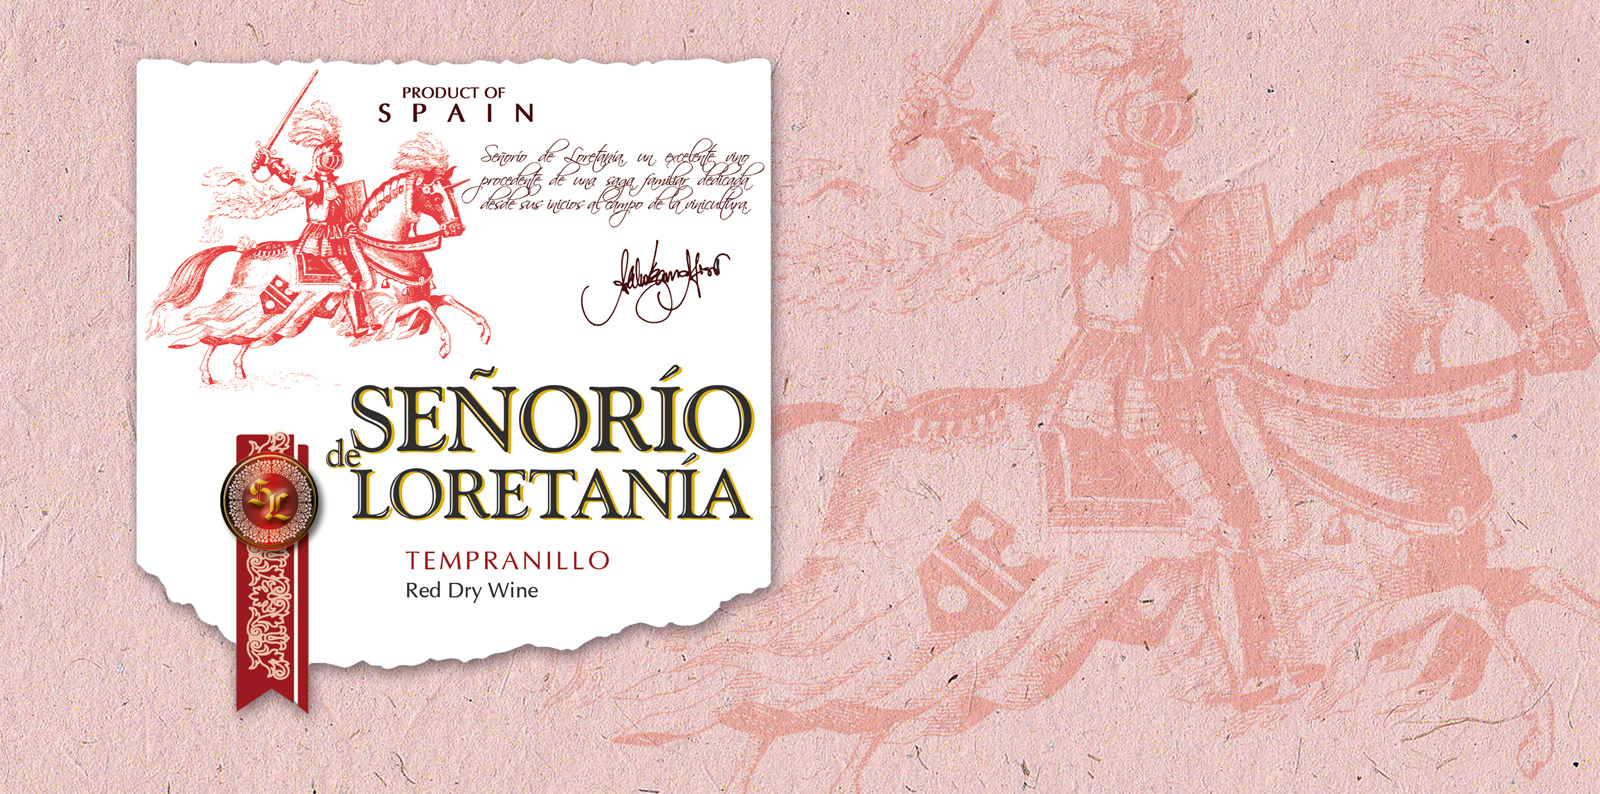 Diseño gráfico y creativo de etiquetas y packaging de vino para SEÑORIO DE LORETANIA